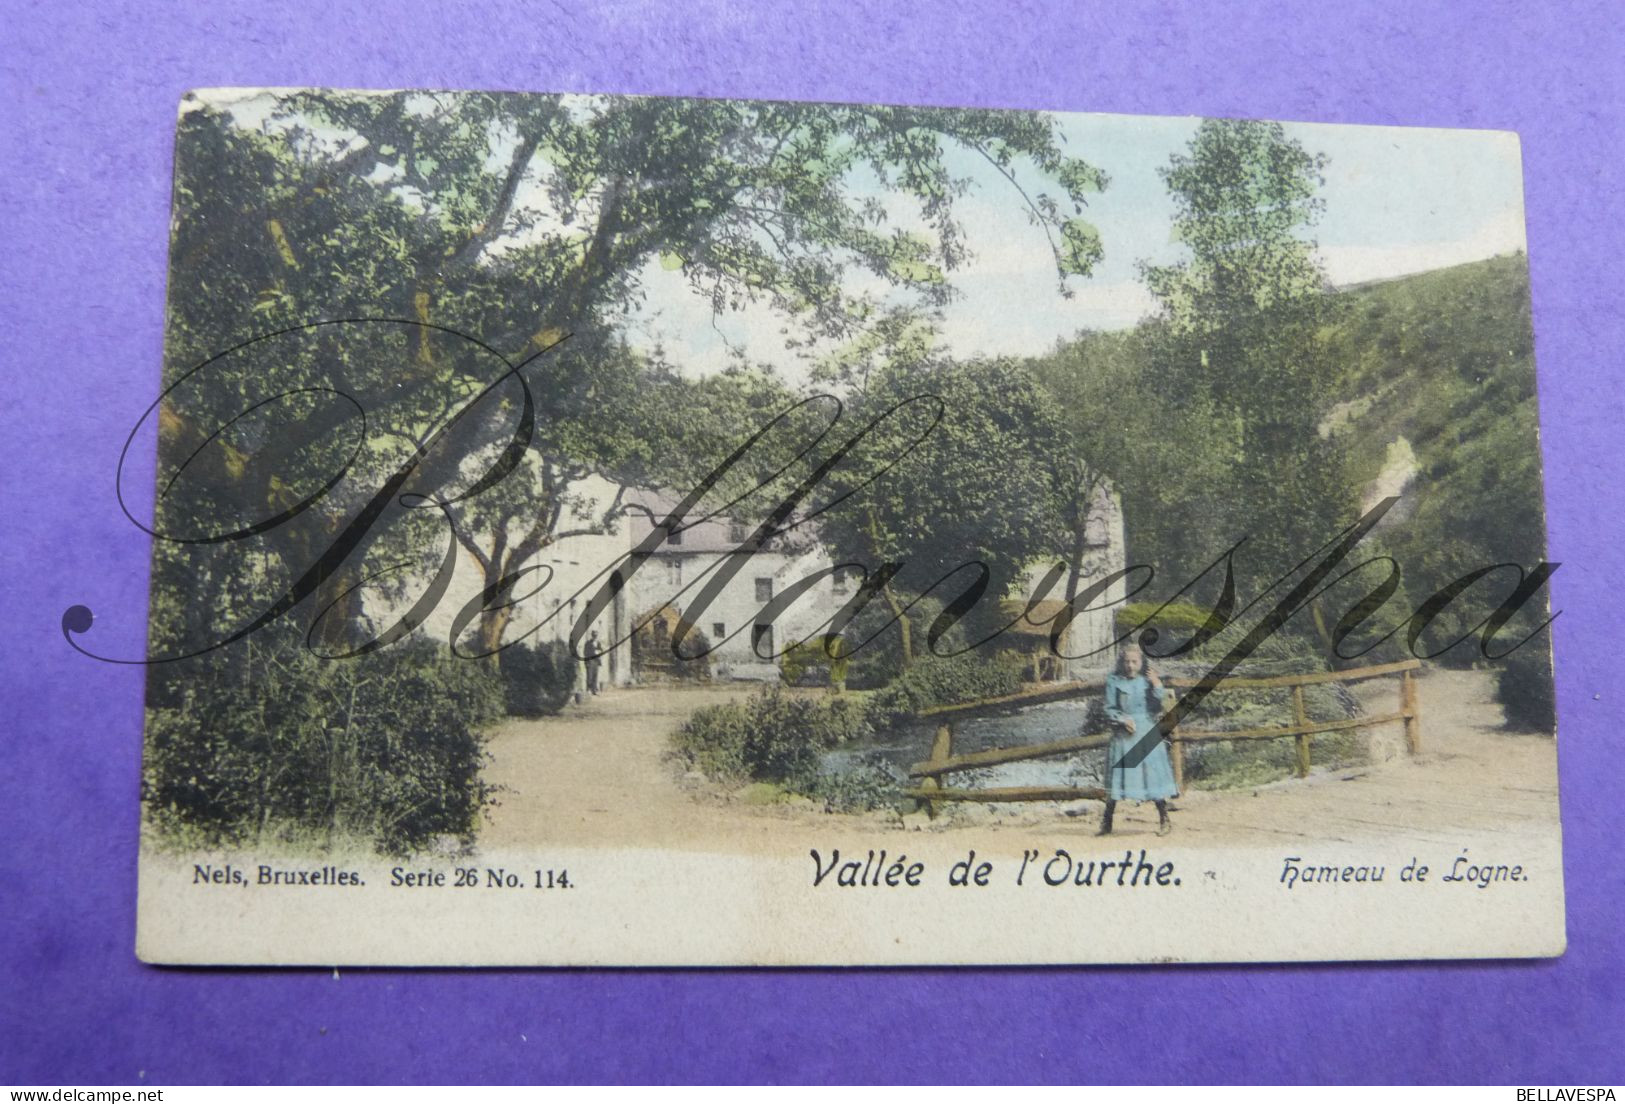 Hameau De Logne Vallée De L'Ourthe Nels Serie 26, N°114 - 1908 - Ferrieres